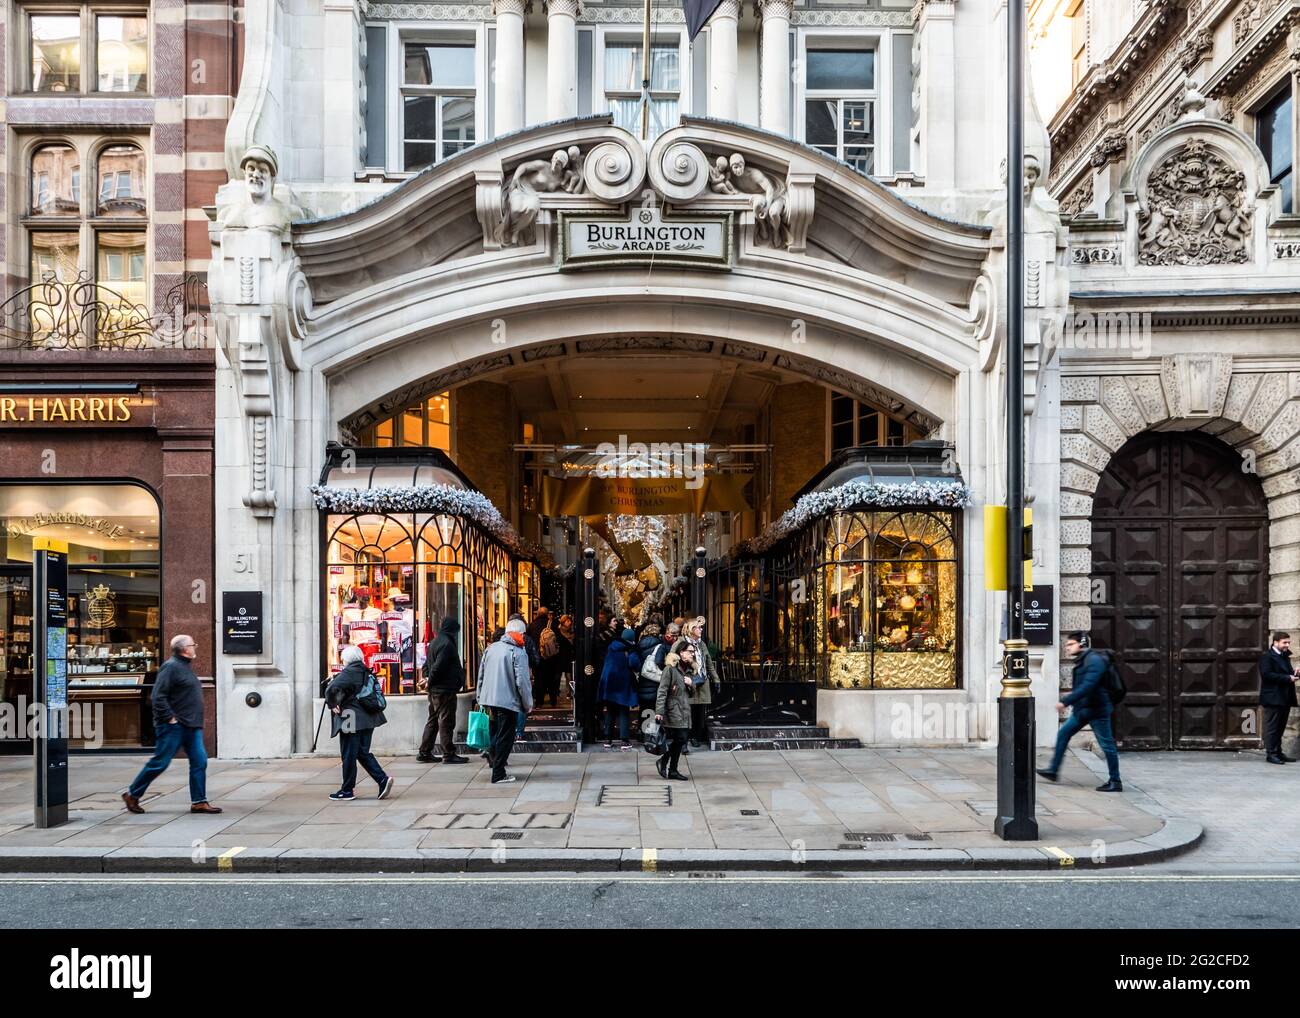 Burlington Arcade, Piccadilly, Londra. Il Grand façade all'esclusiva galleria di negozi di beni di lusso, arte e antiquariato vicino Bond Street. Foto Stock